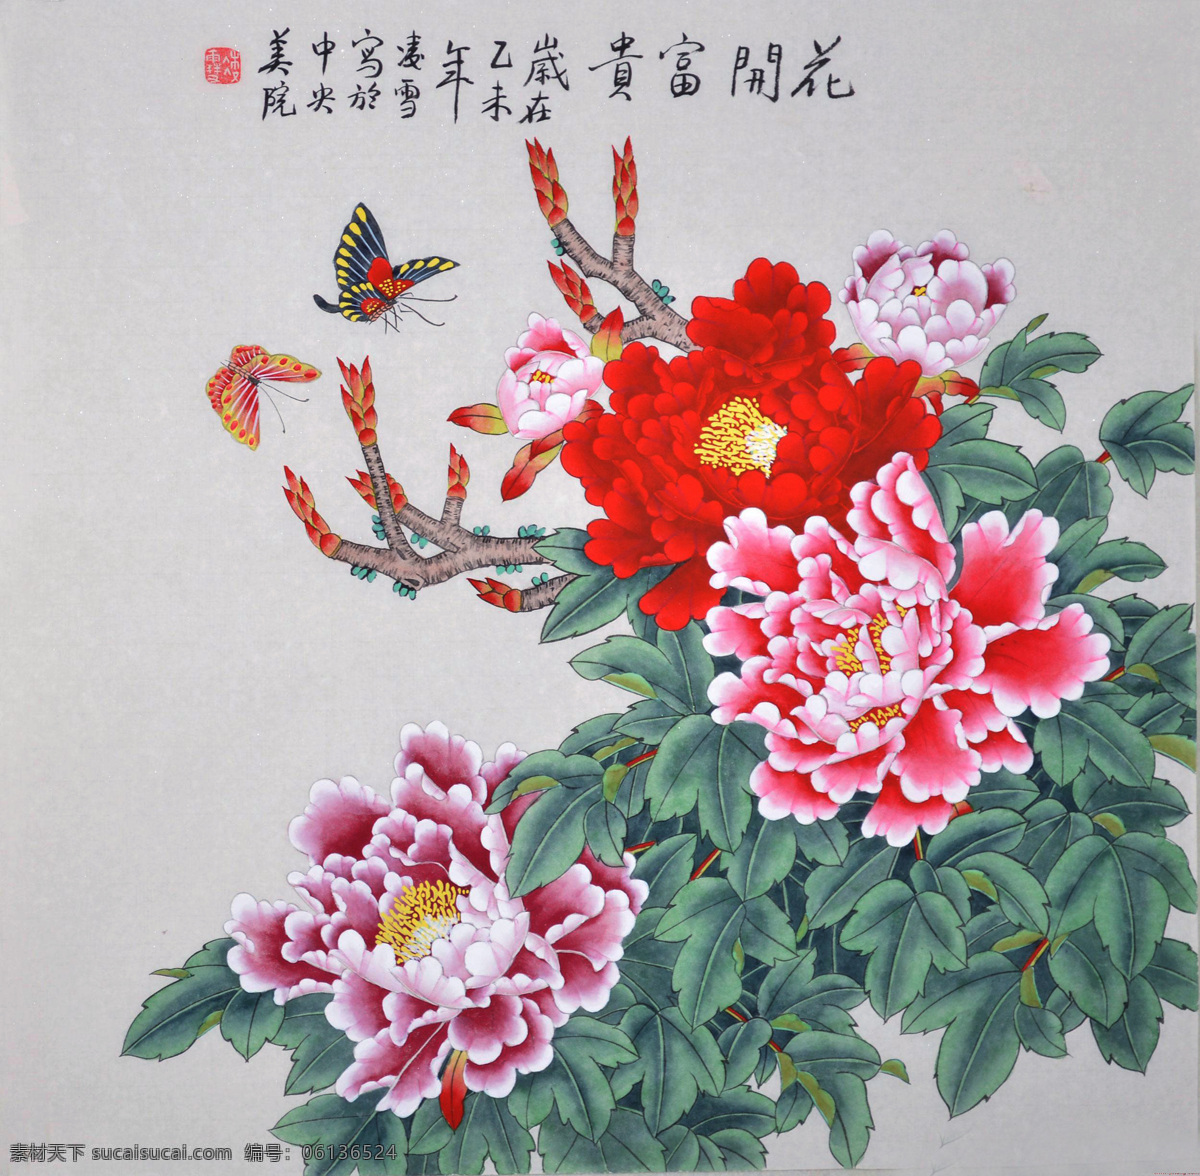 国画牡丹 国画 水墨画 花鸟画 工笔画 中国画 牡丹 艺术绘画 文化艺术 绘画书法